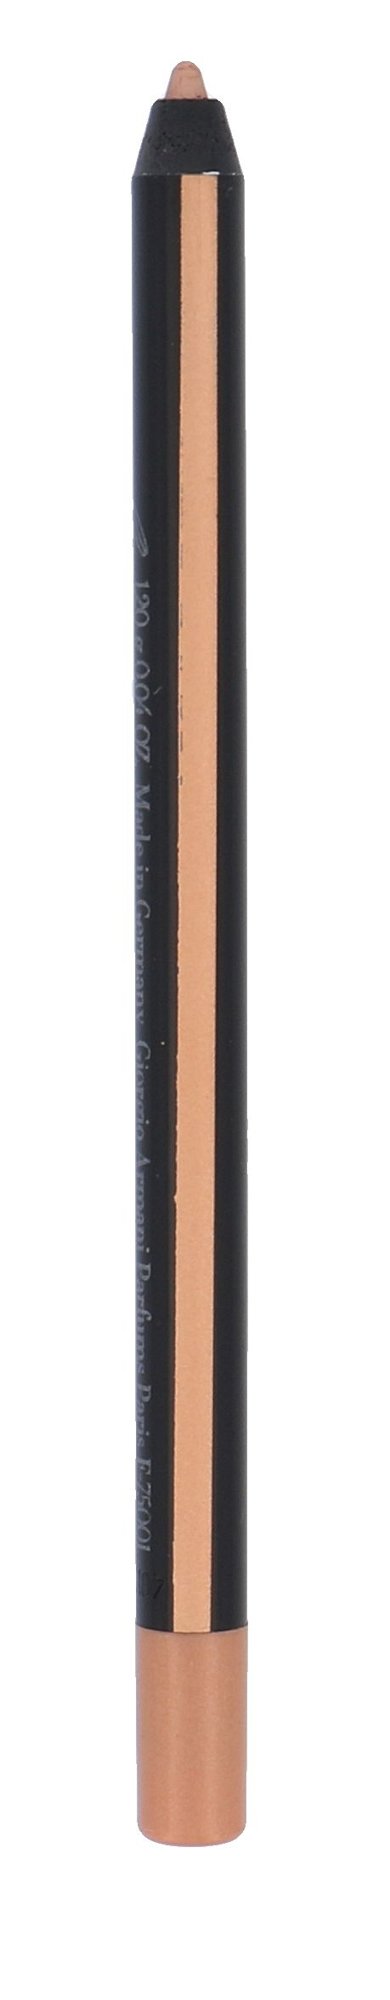 Giorgio Armani Eye Pencil 1,2g akių pieštukas